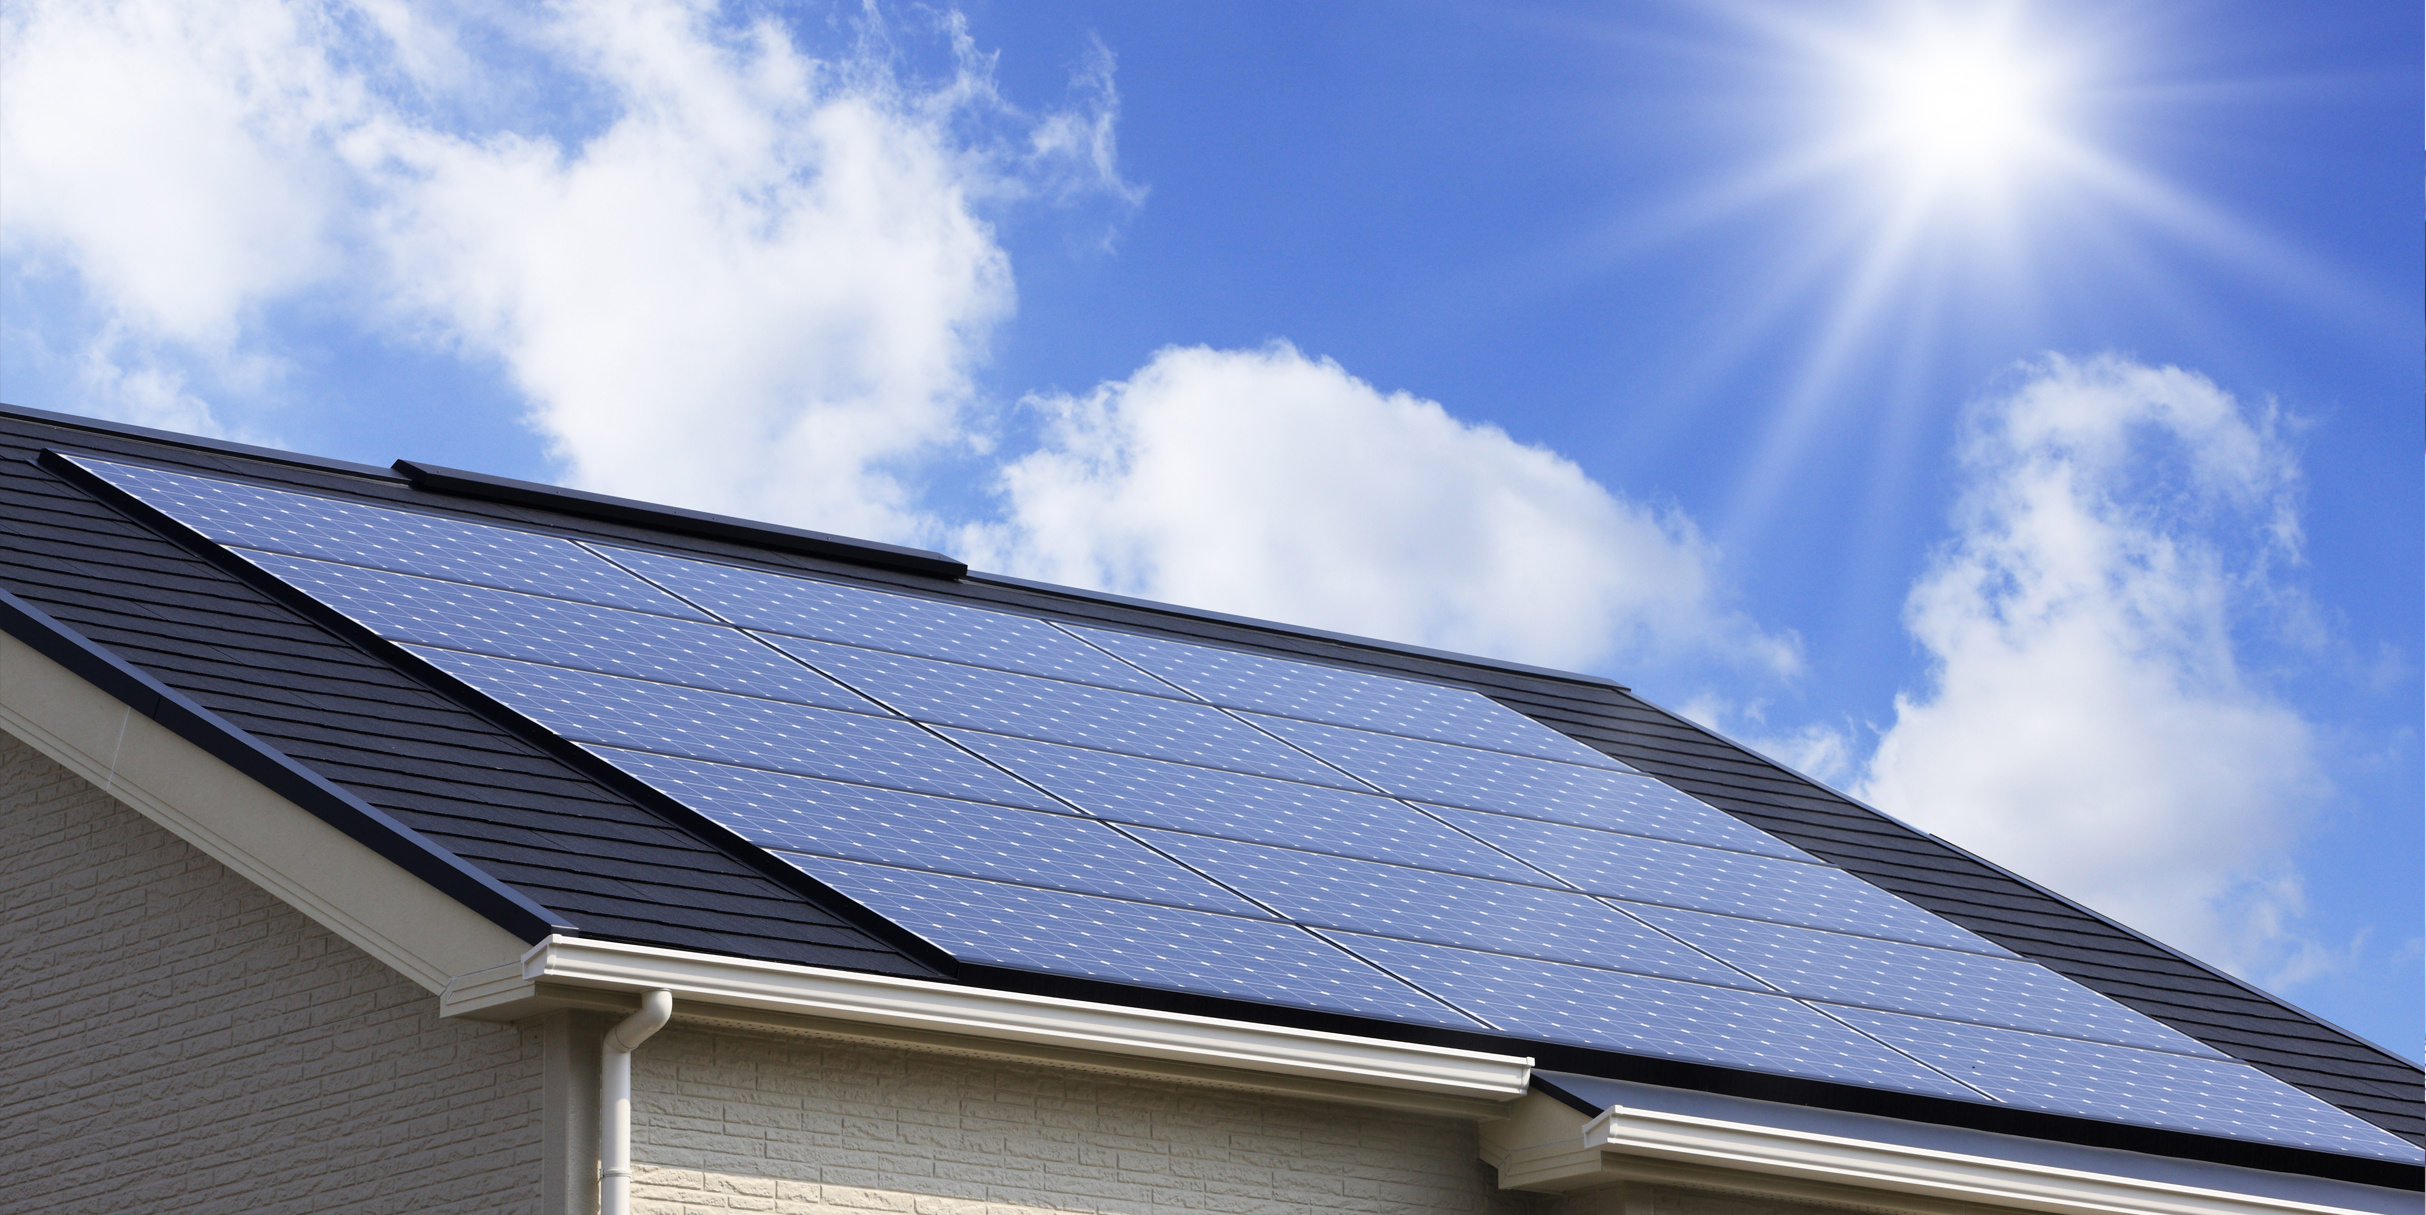 2019年問題とは、2019年に家庭用太陽光発電の固定価格買取期間が順次満了することをいいます。 この買取制度は2009年から開始され、太陽光発電で作られた電力のうち余剰電力が買取対象となる制度です。買取期間が10年間と設定されているため、2019年以降、設置して10年経ったところから、順次買取期間が満了するため売電価格が大幅に引き下げられます。こういった買取期間満了への対策として蓄電池の導入が検討されるようになりました。